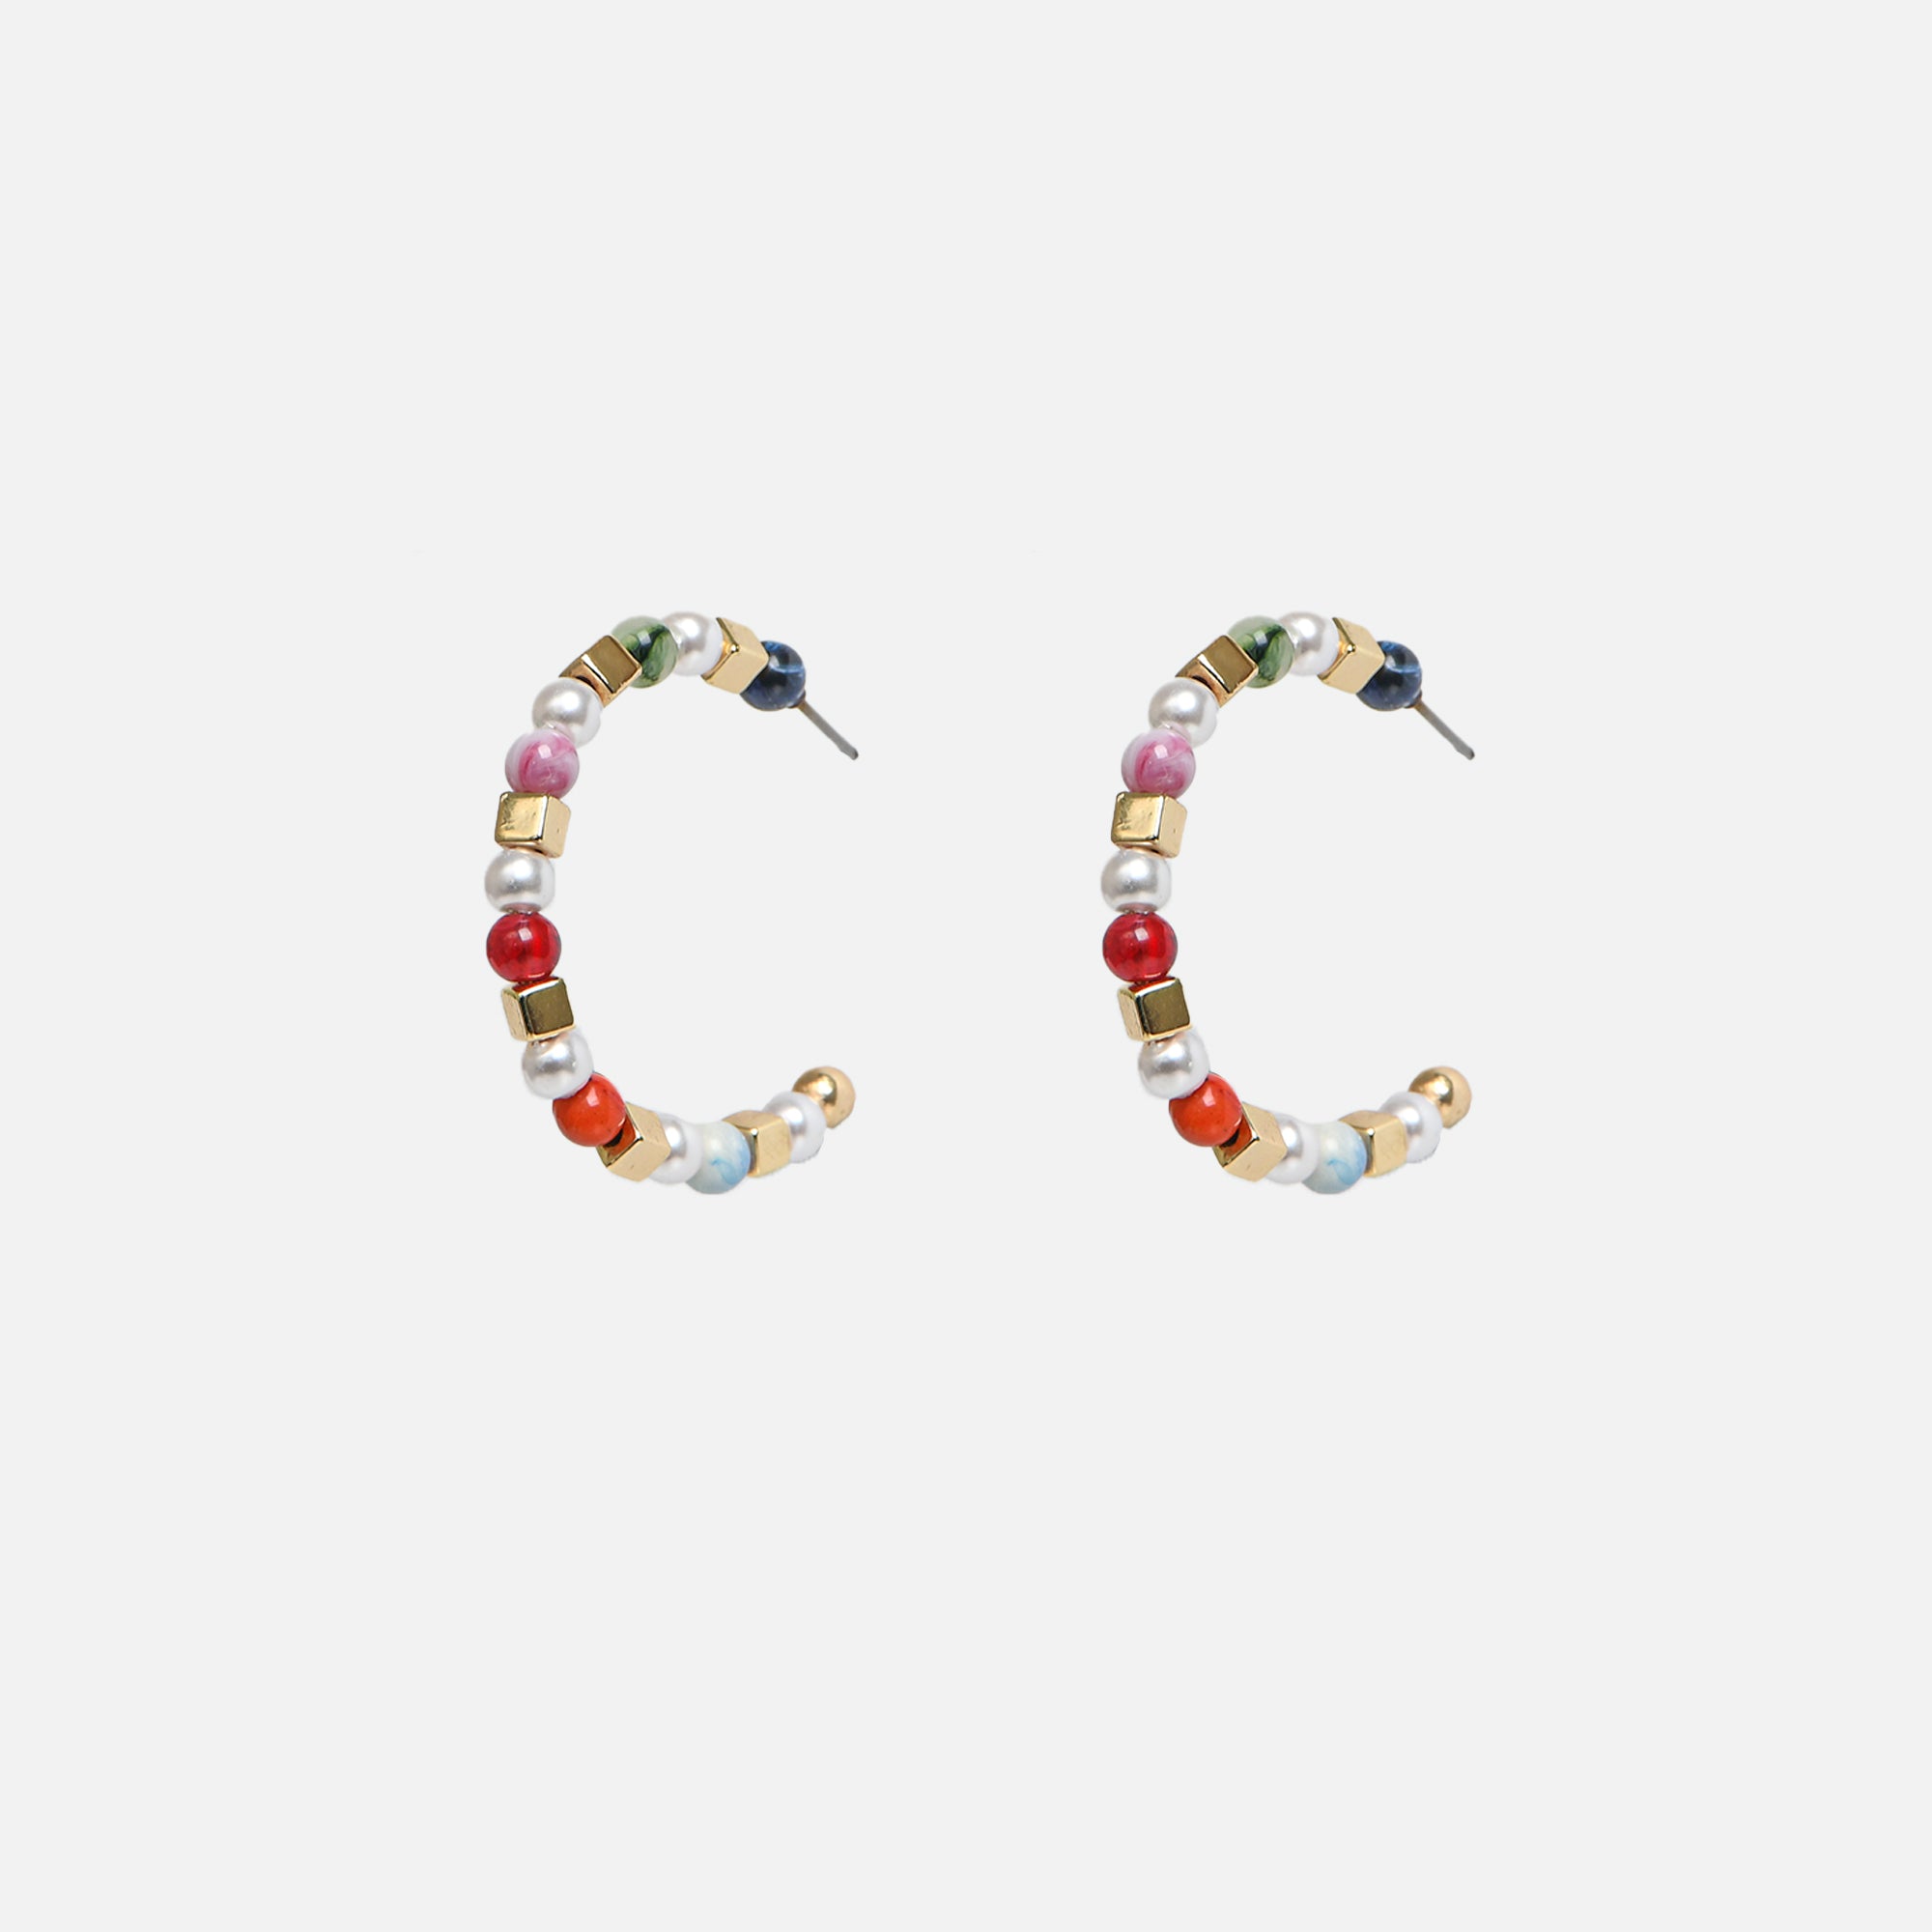 Boucles d’oreilles anneaux perles et billes multicolores